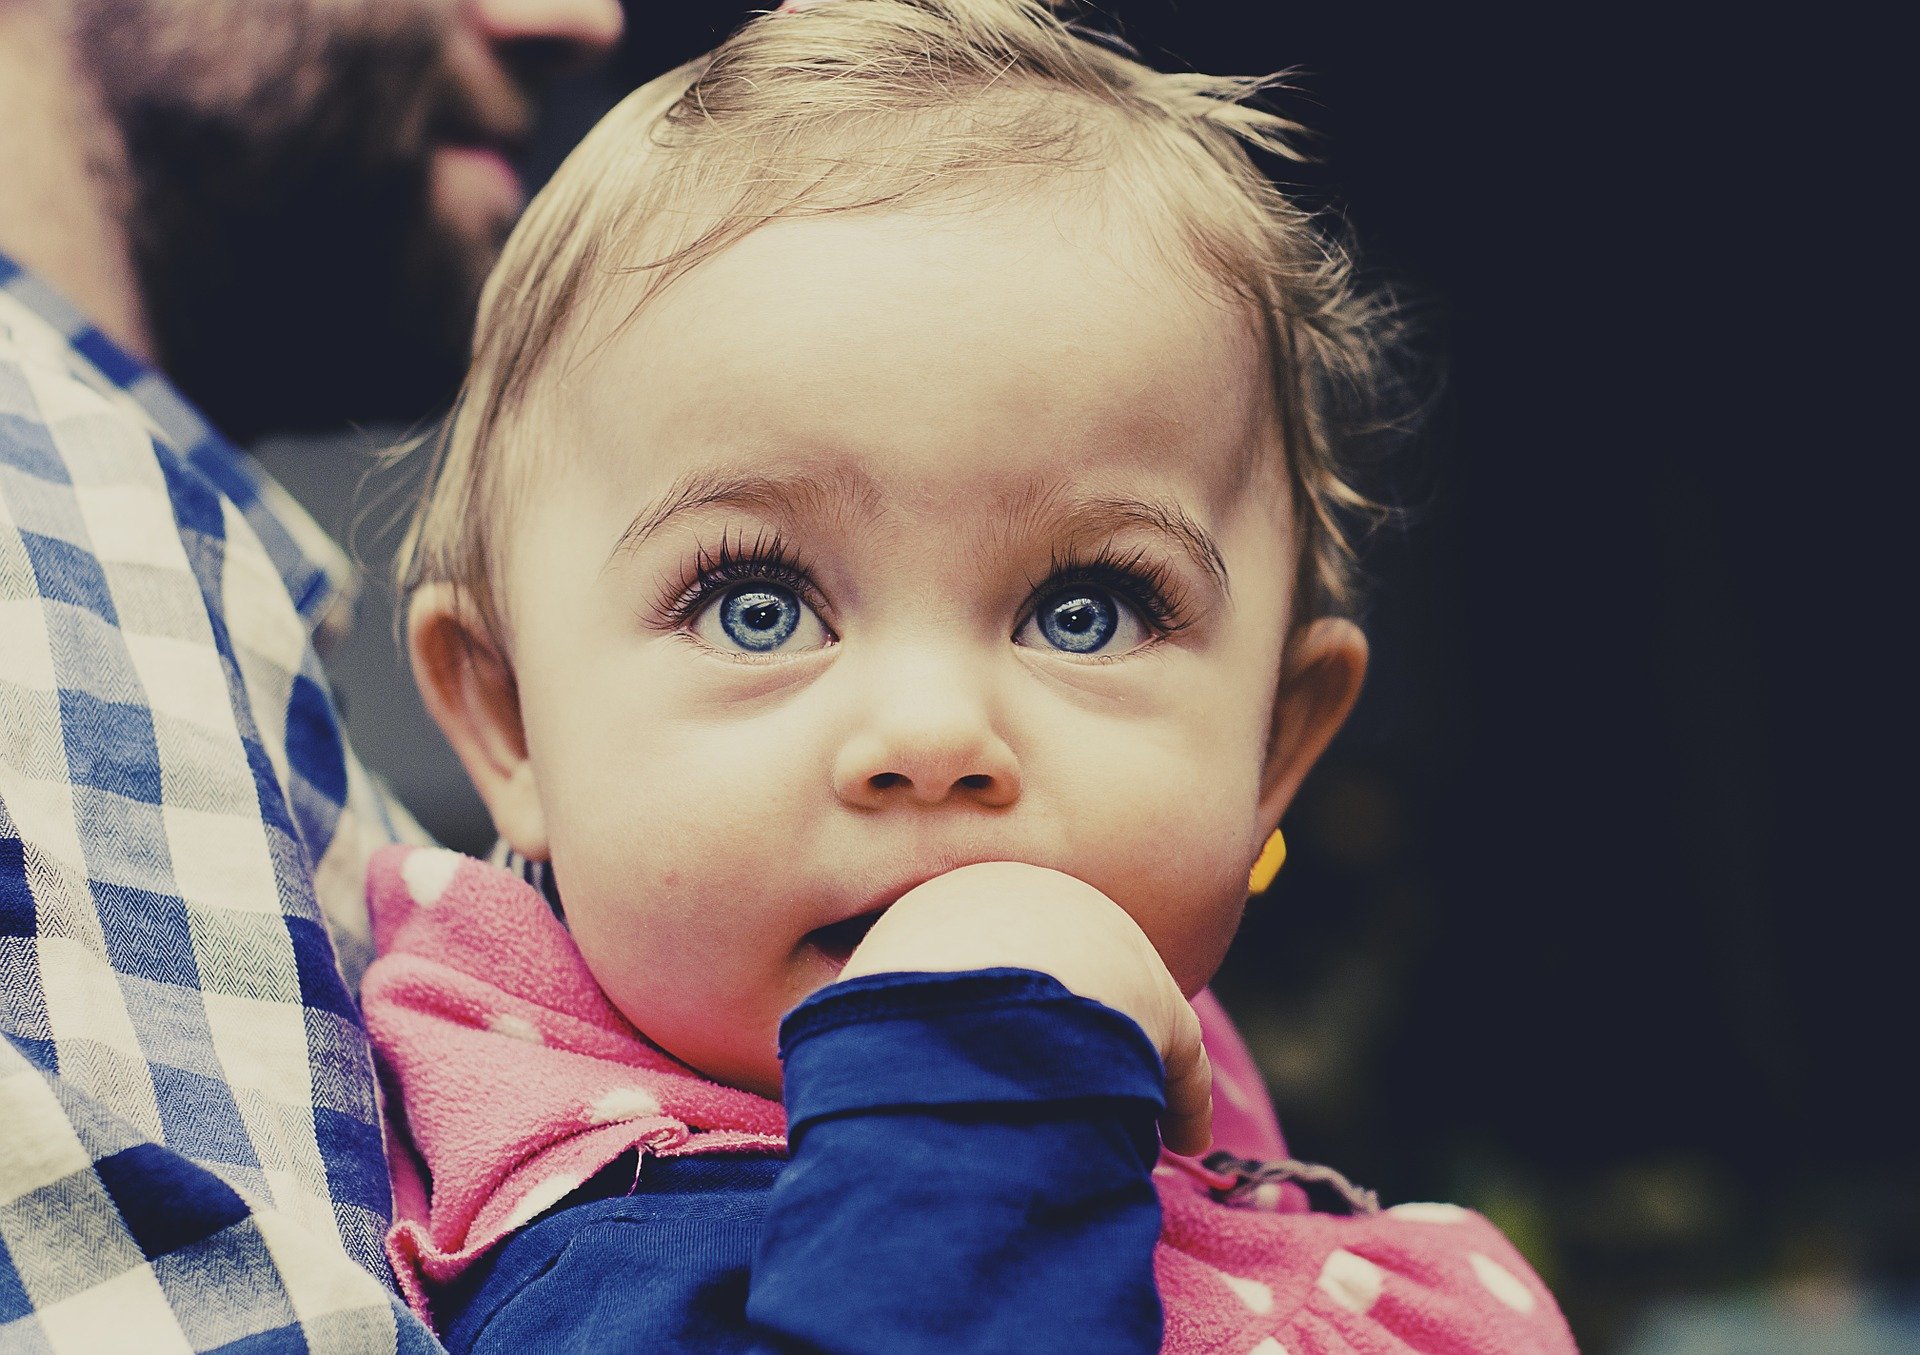 푸른 눈을 가진 외국 어린아이가 오른손을 입에 넣고 정면위를 바라보며 아빠품에 안겨있는 사진